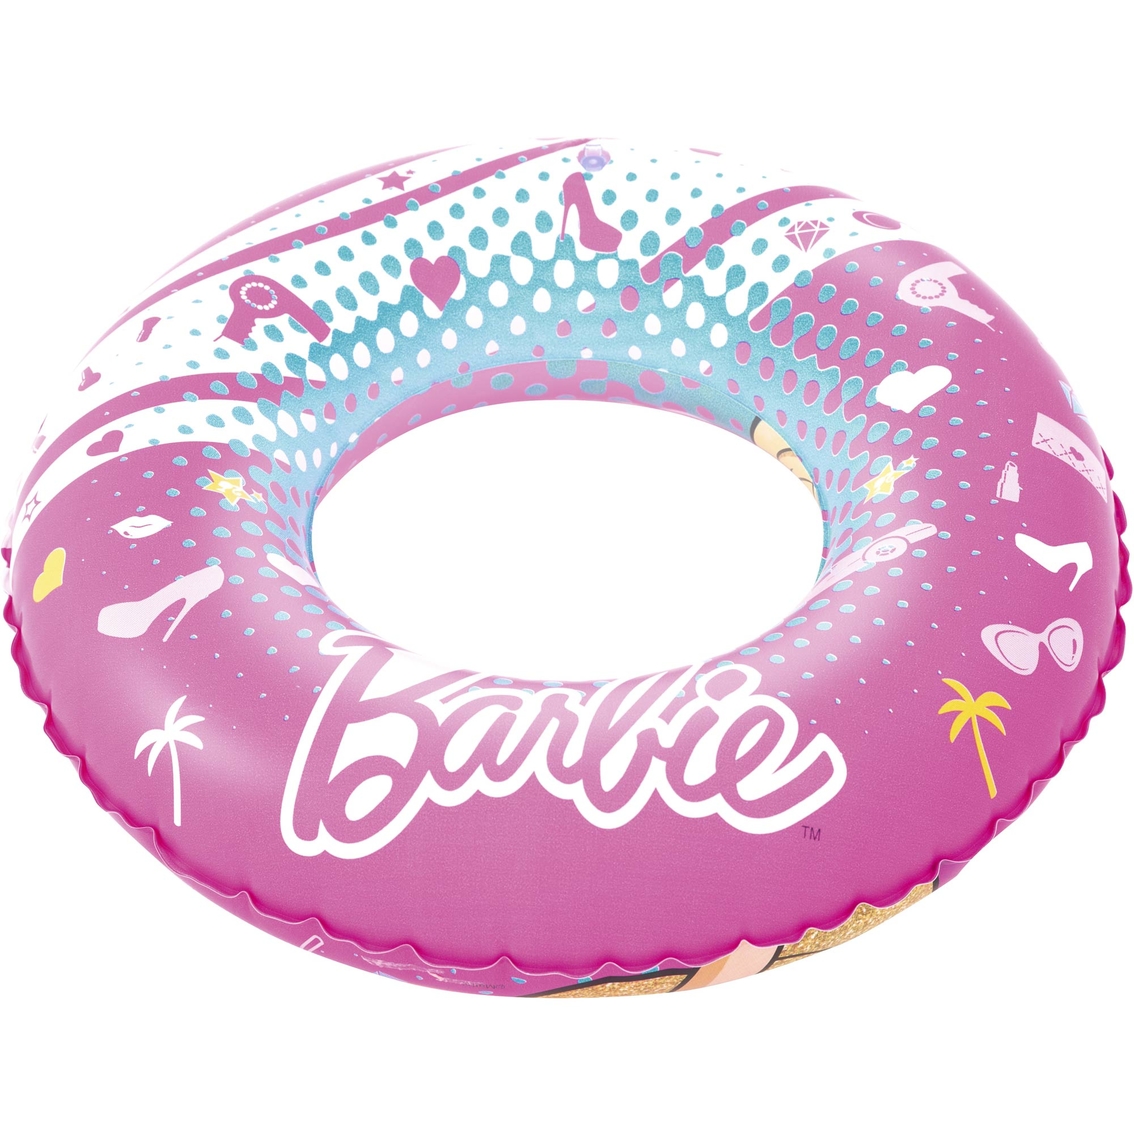 Bestway Barbie 22-in. Swim Ring - Image 2 of 3